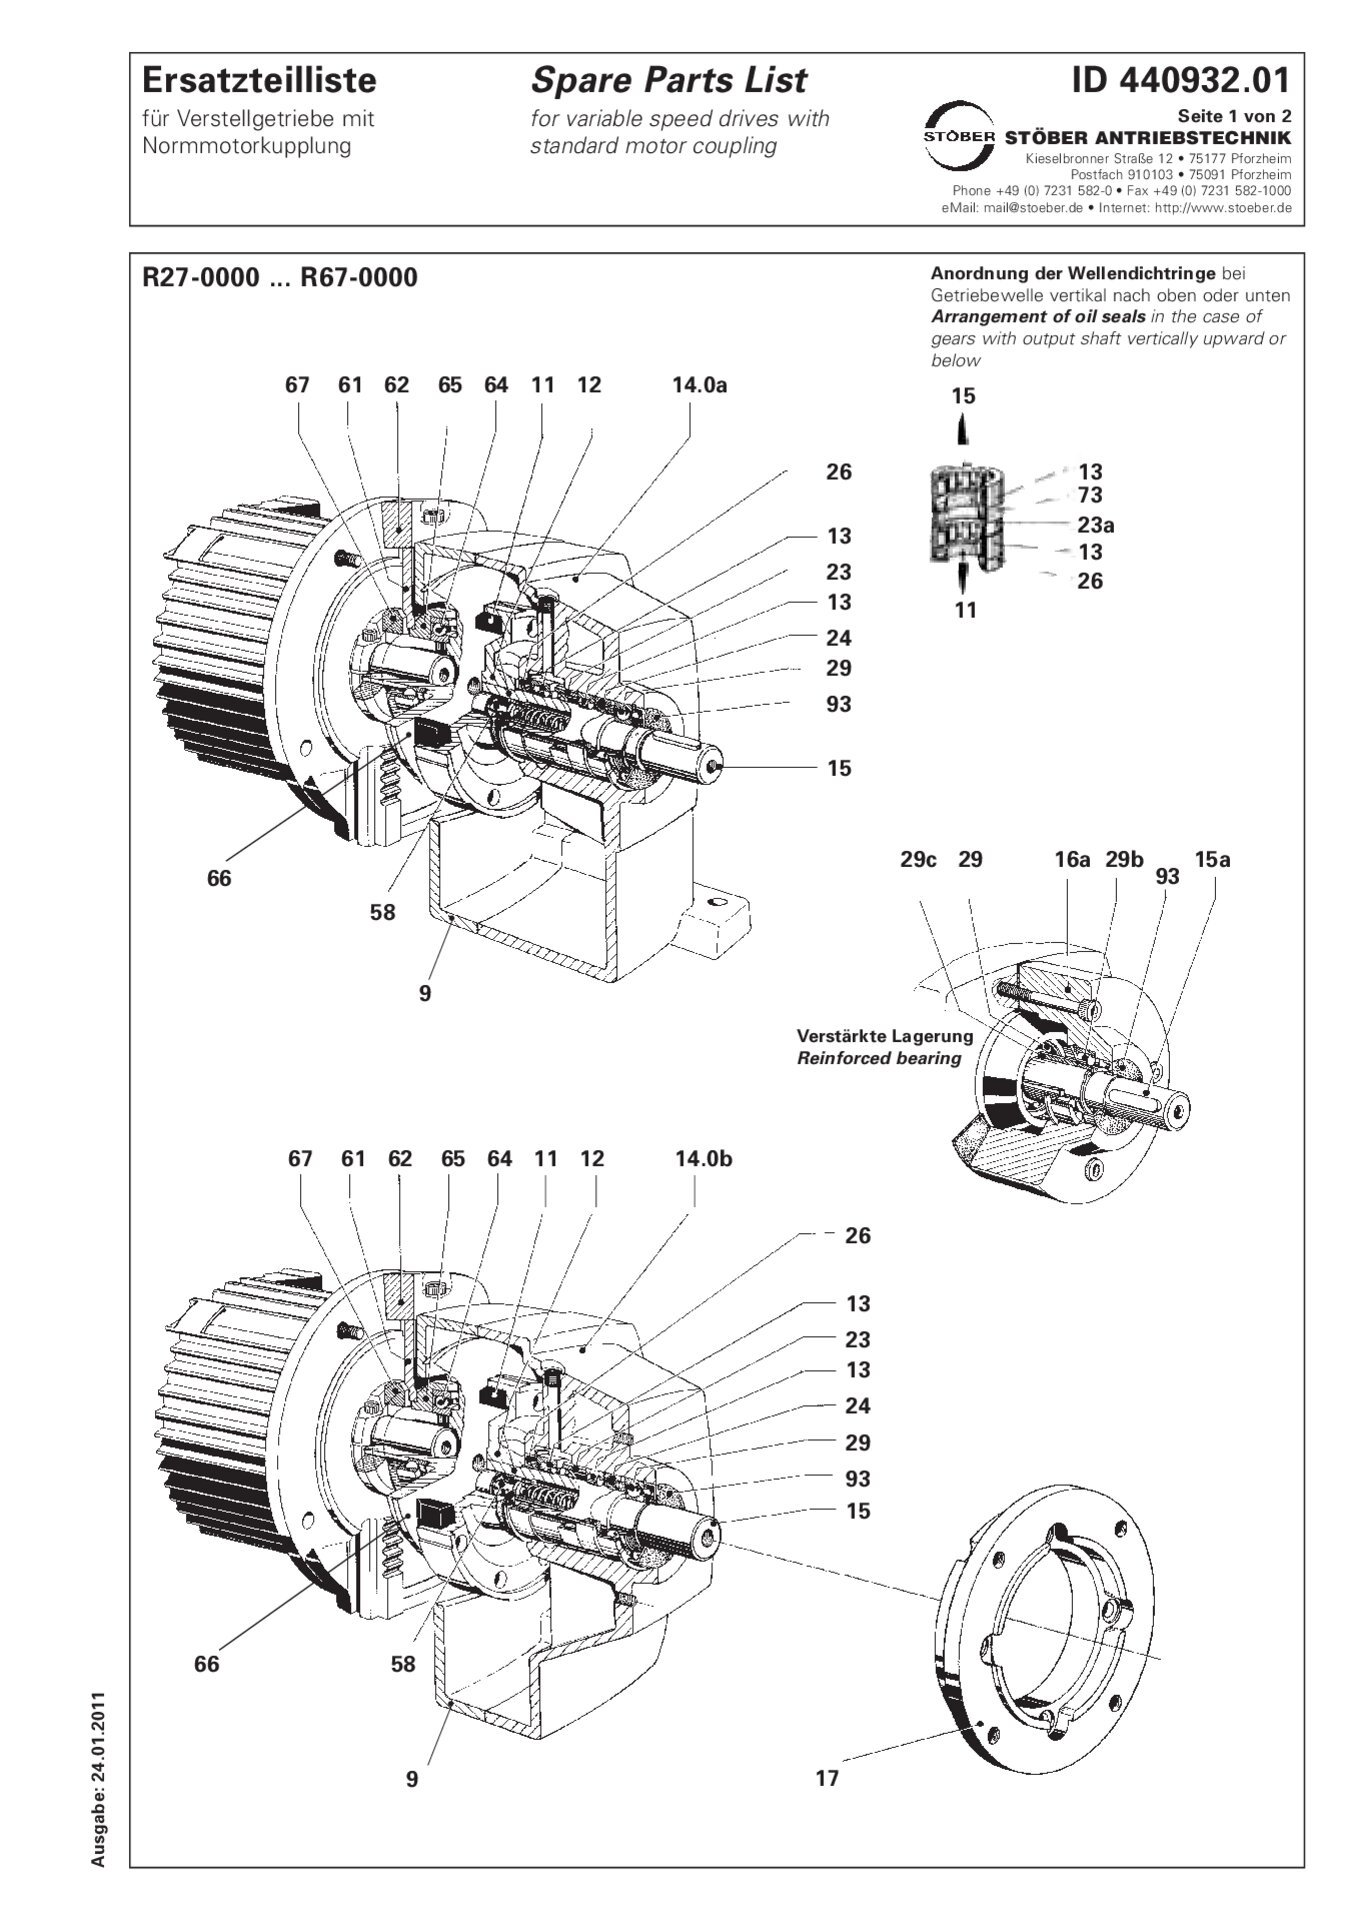 Ersatzteilliste R27-0000 - R67-0000 mit NormmotorkupplungSpare parts list R27-0/R37-0/R47-0/R57-0/R67-0 with standard motor coupling